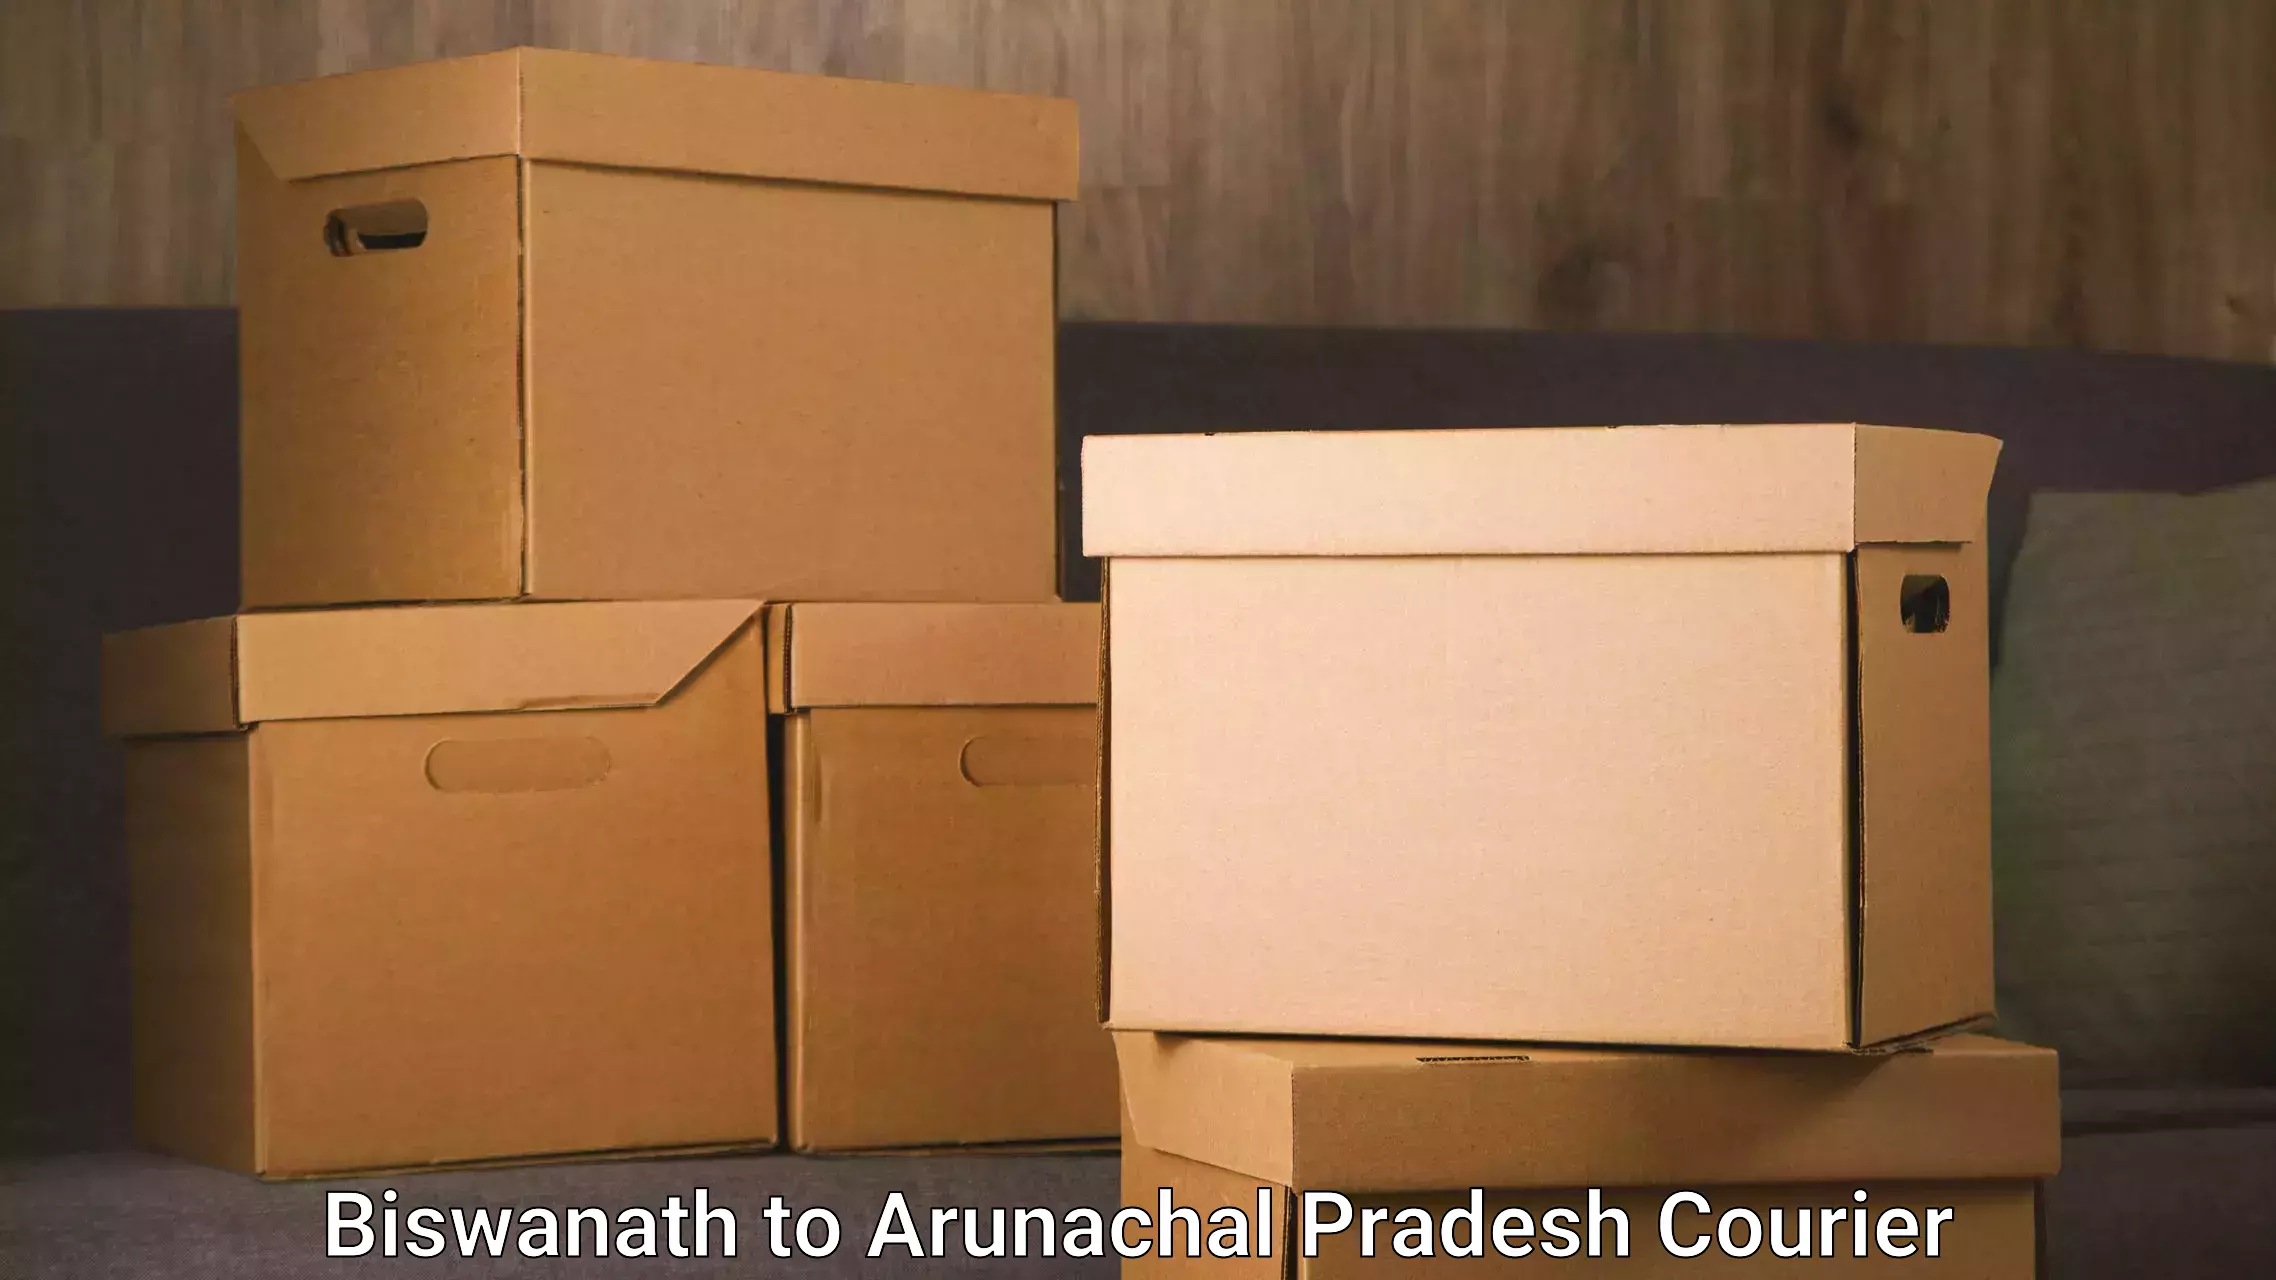 Enhanced tracking features Biswanath to Arunachal Pradesh